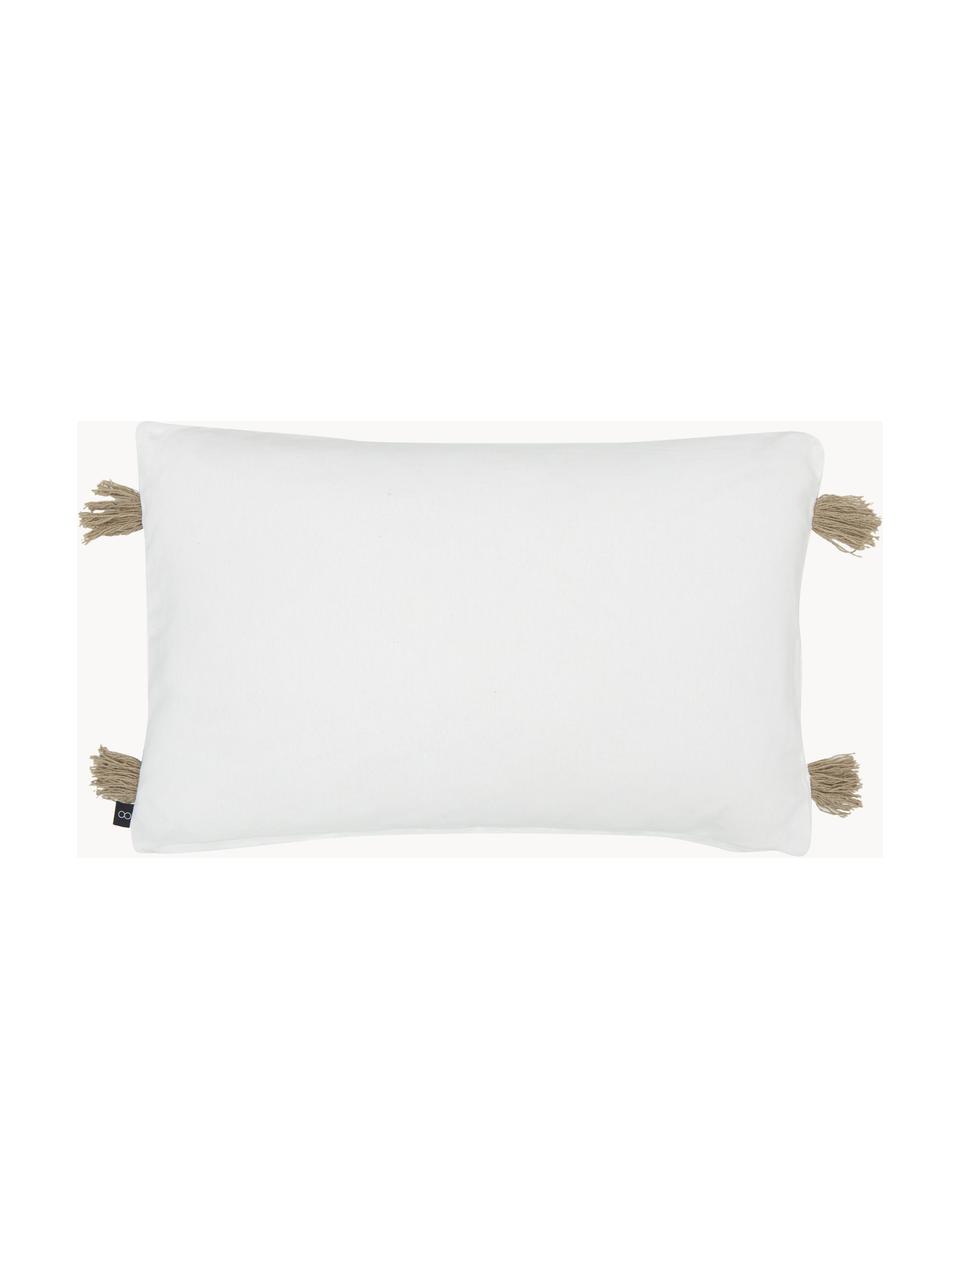 Copricuscino in cotone con nappe Viale, 100% cotone, Bianco, beige, Larg. 40 x Lung. 60 cm